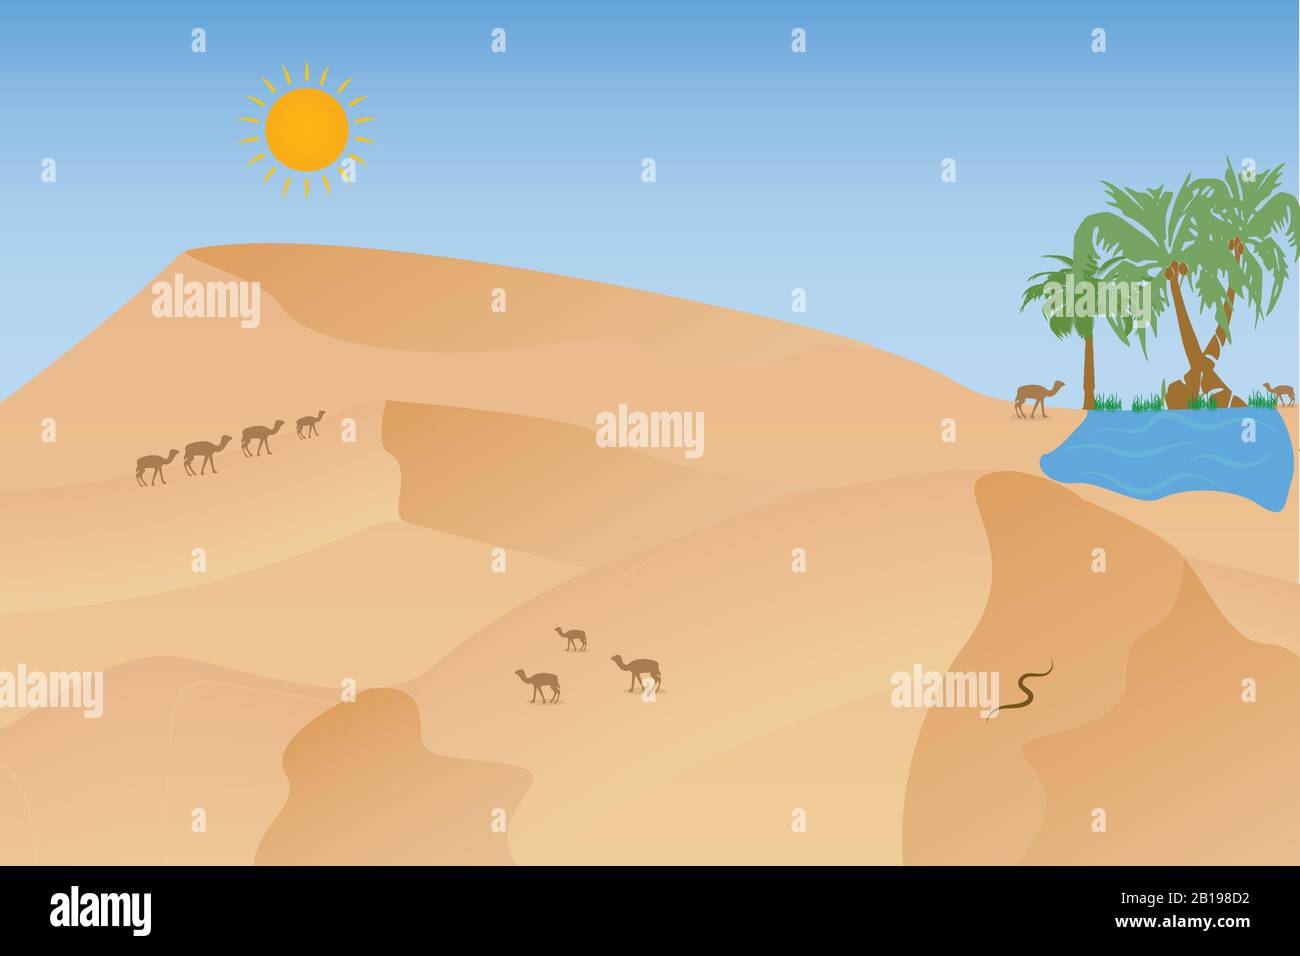 Paysage désertique africain chaud avec chameaux, dunes Illustration de Vecteur